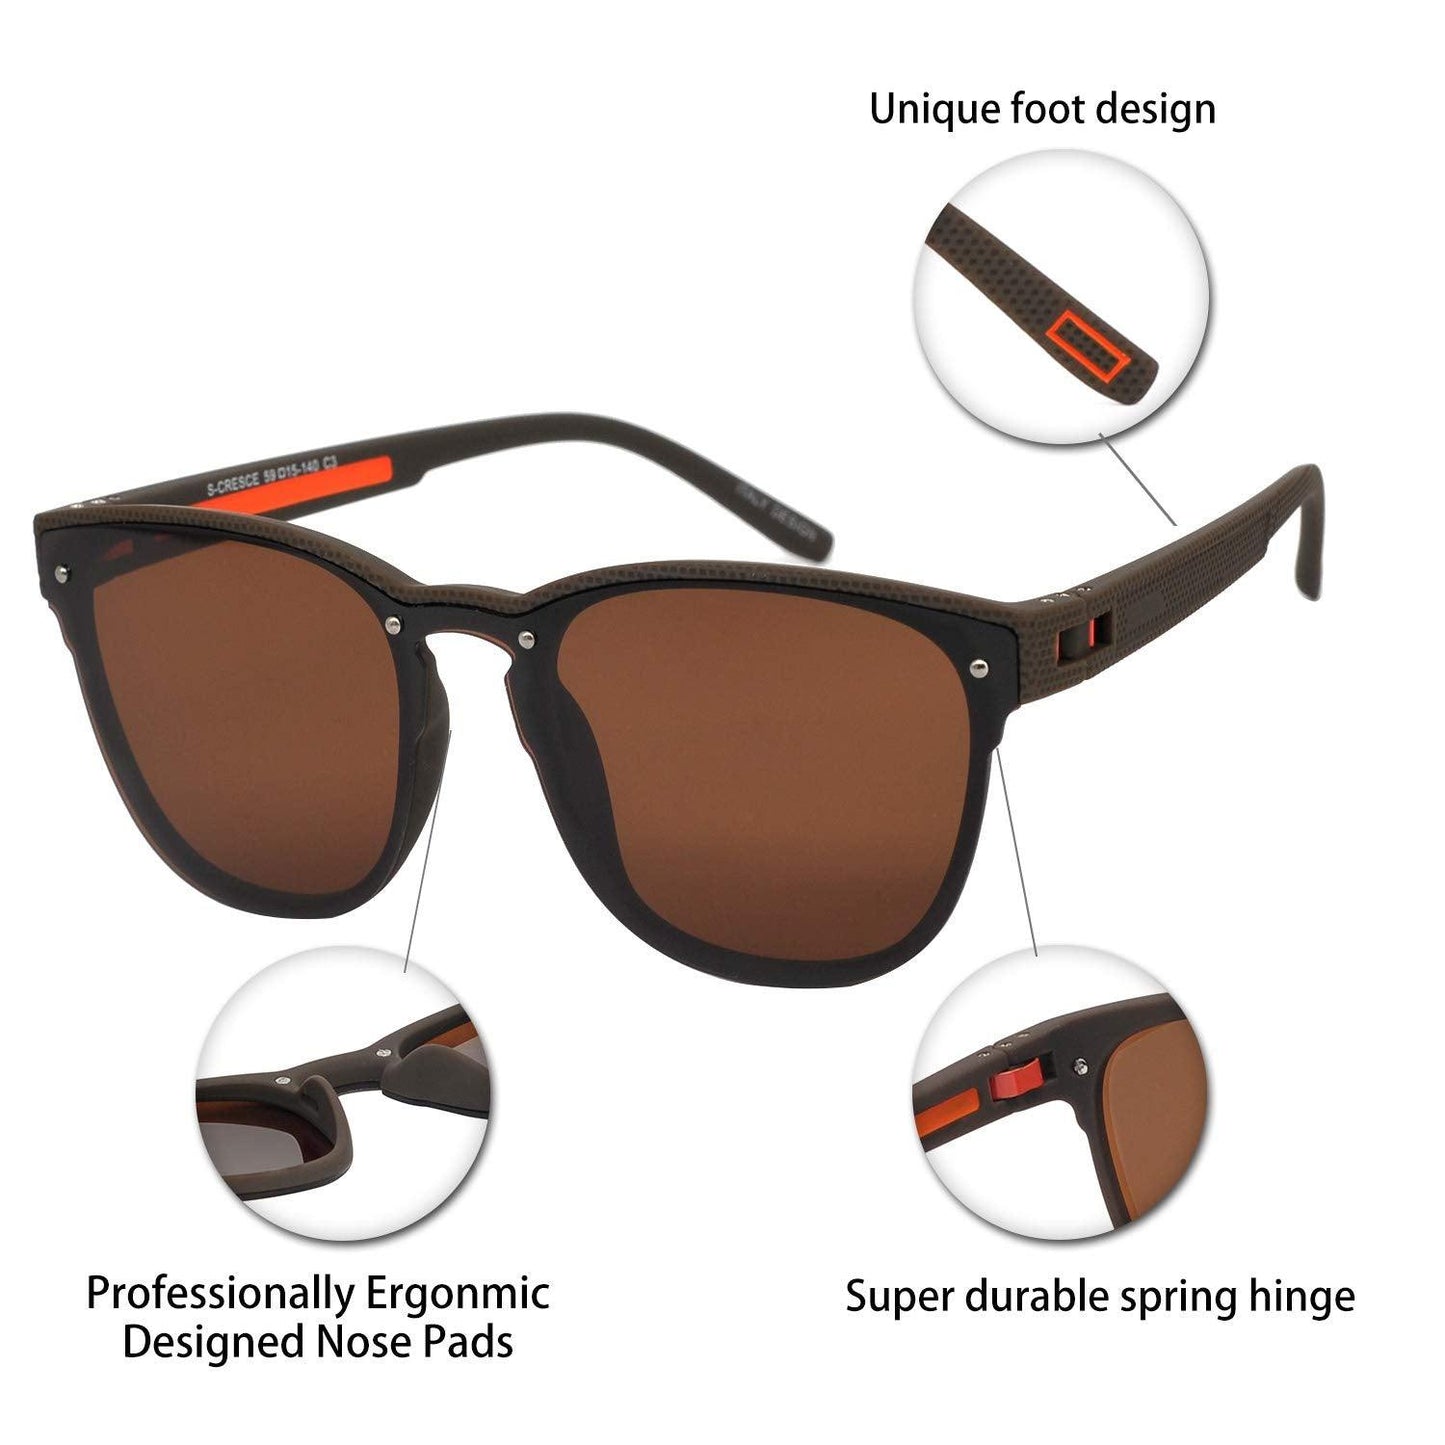 Mens Polarized UV 400 Protection Sport Square Sunglasses for Men Fishing Driving OCCI CHIARI - Occichiari 